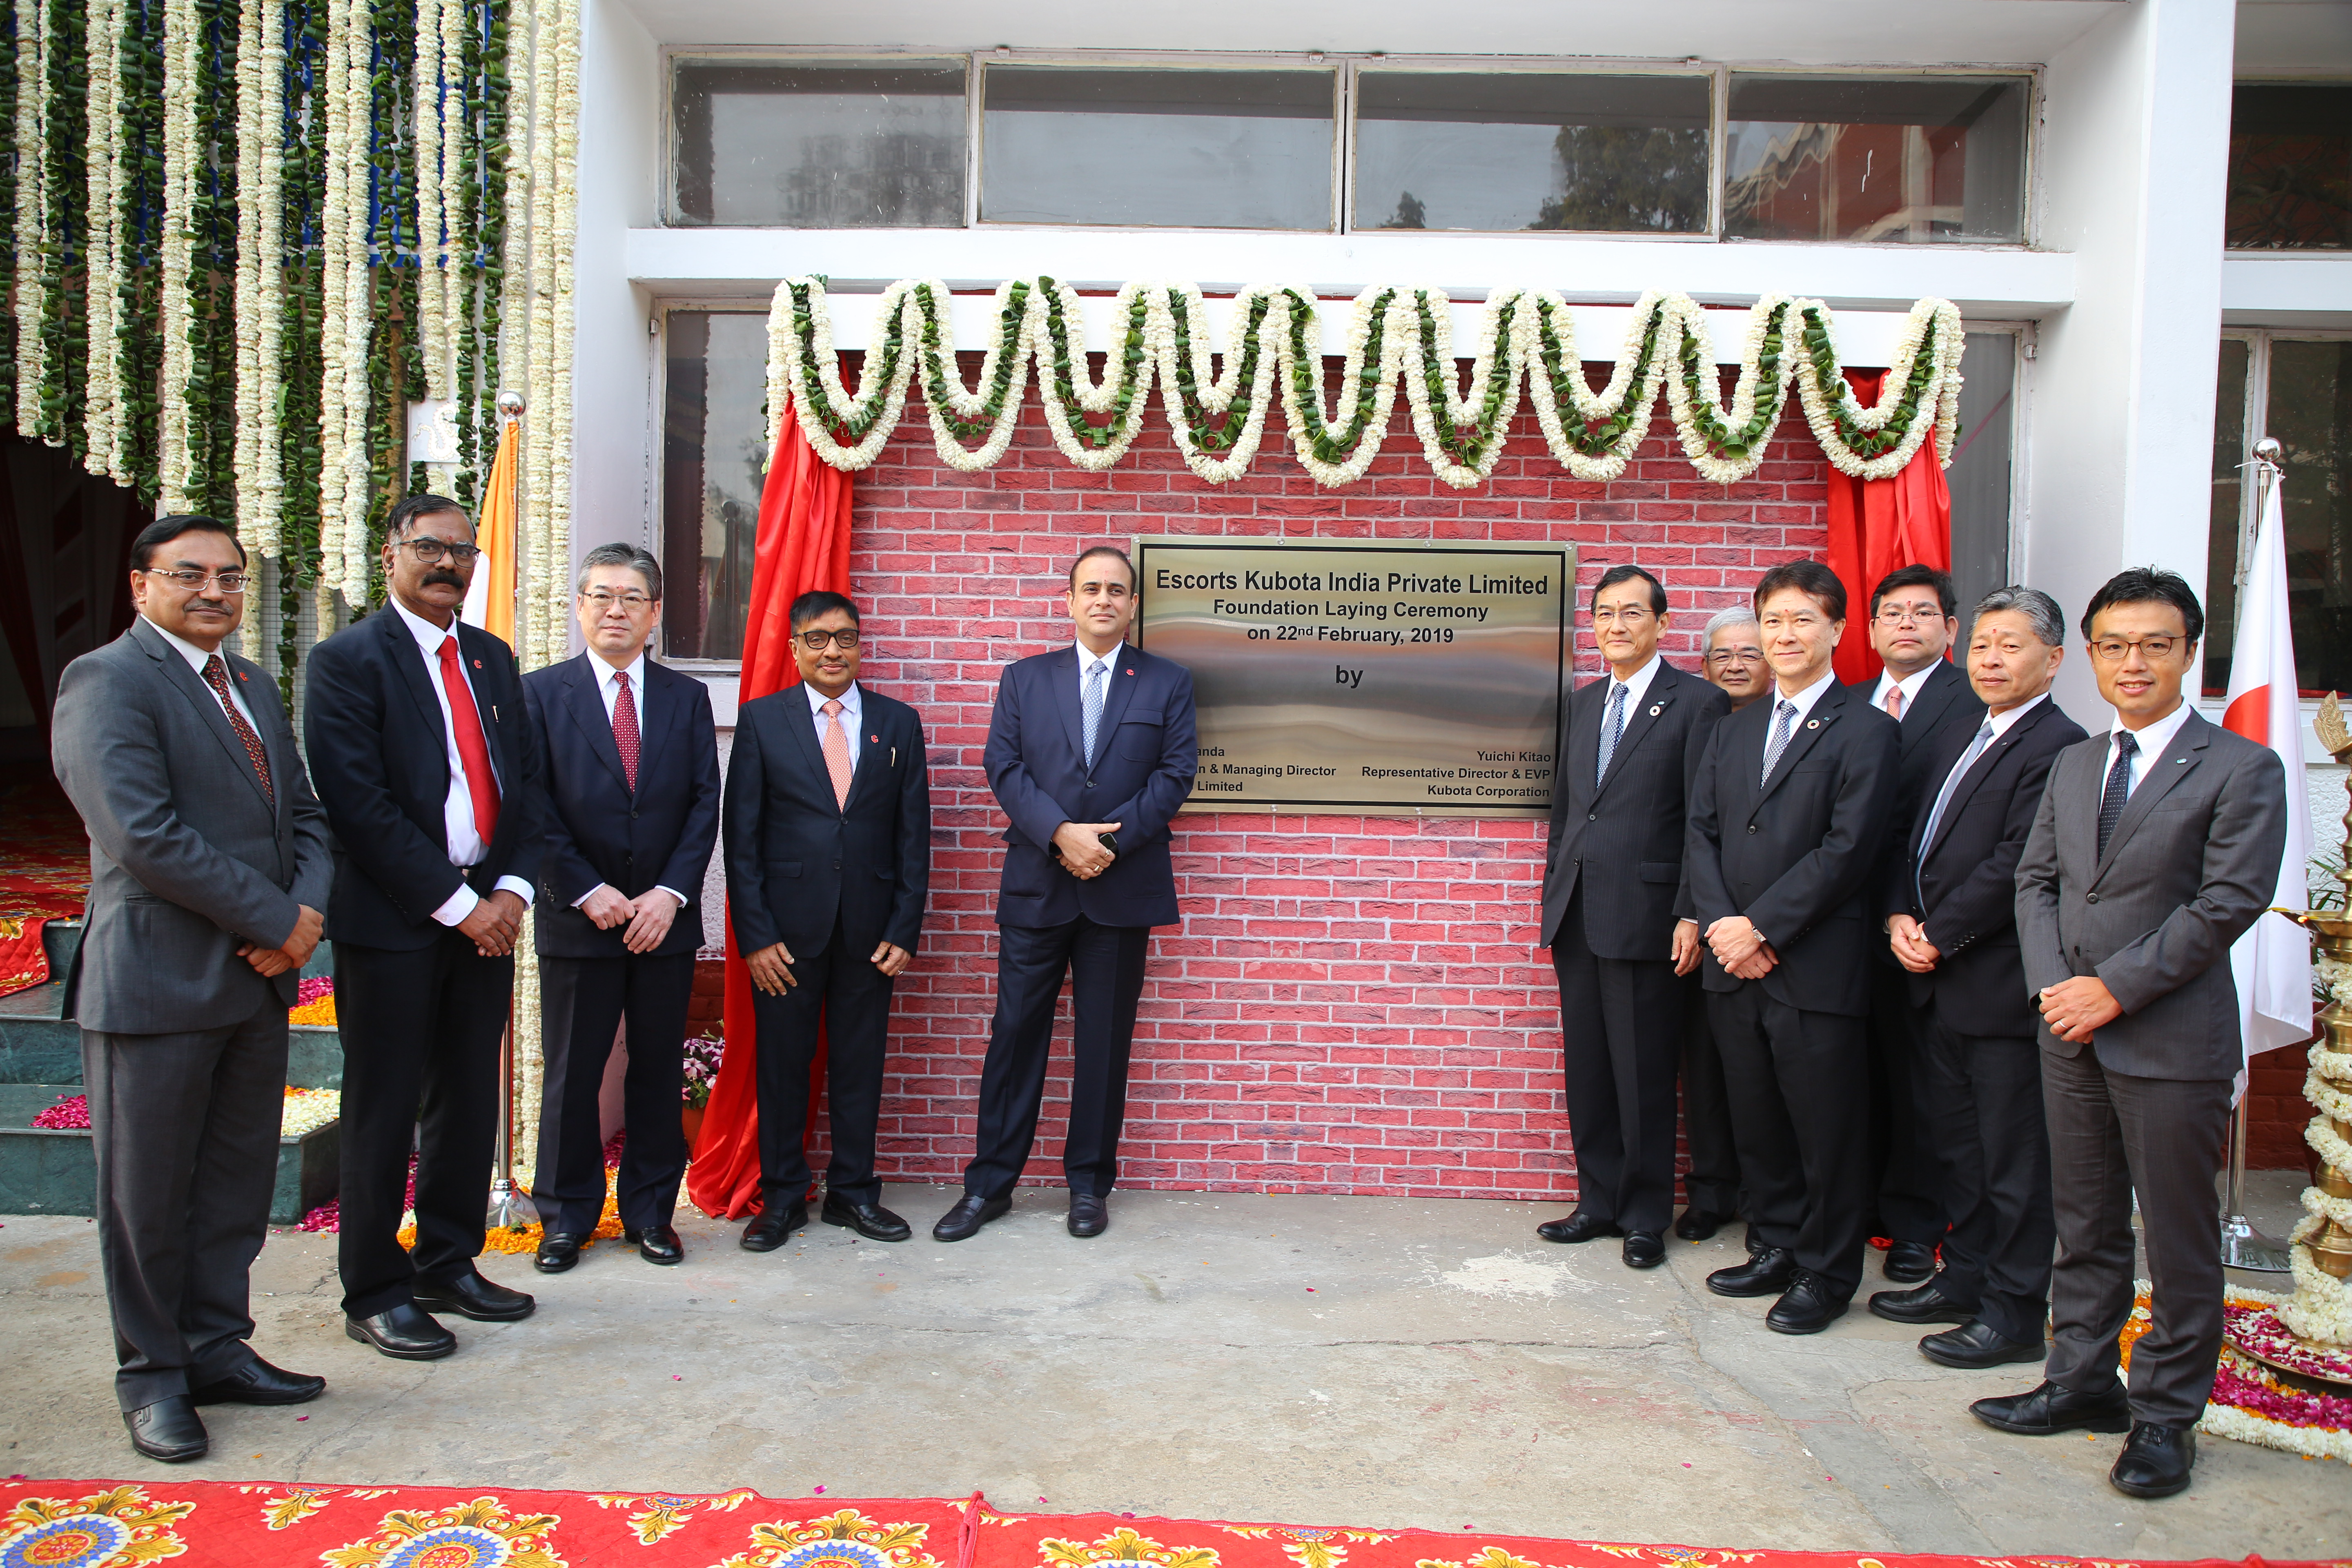 Escorts Kubota lays foundation stone for manufacturing plant in Faridabad